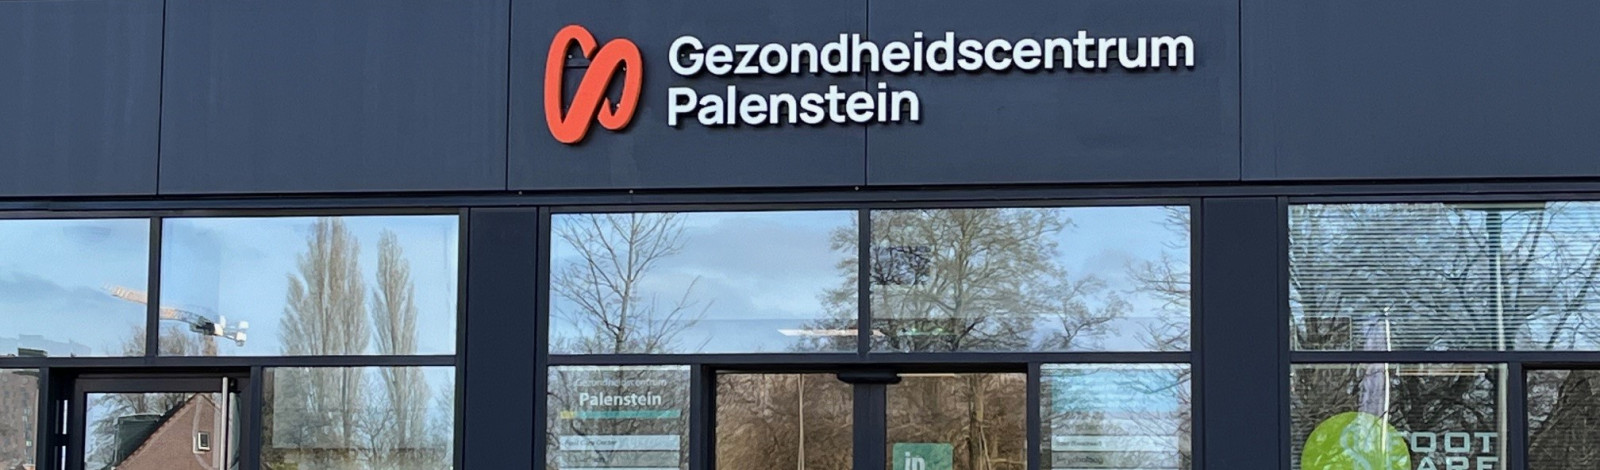 Gezondheidscentrum Palenstein